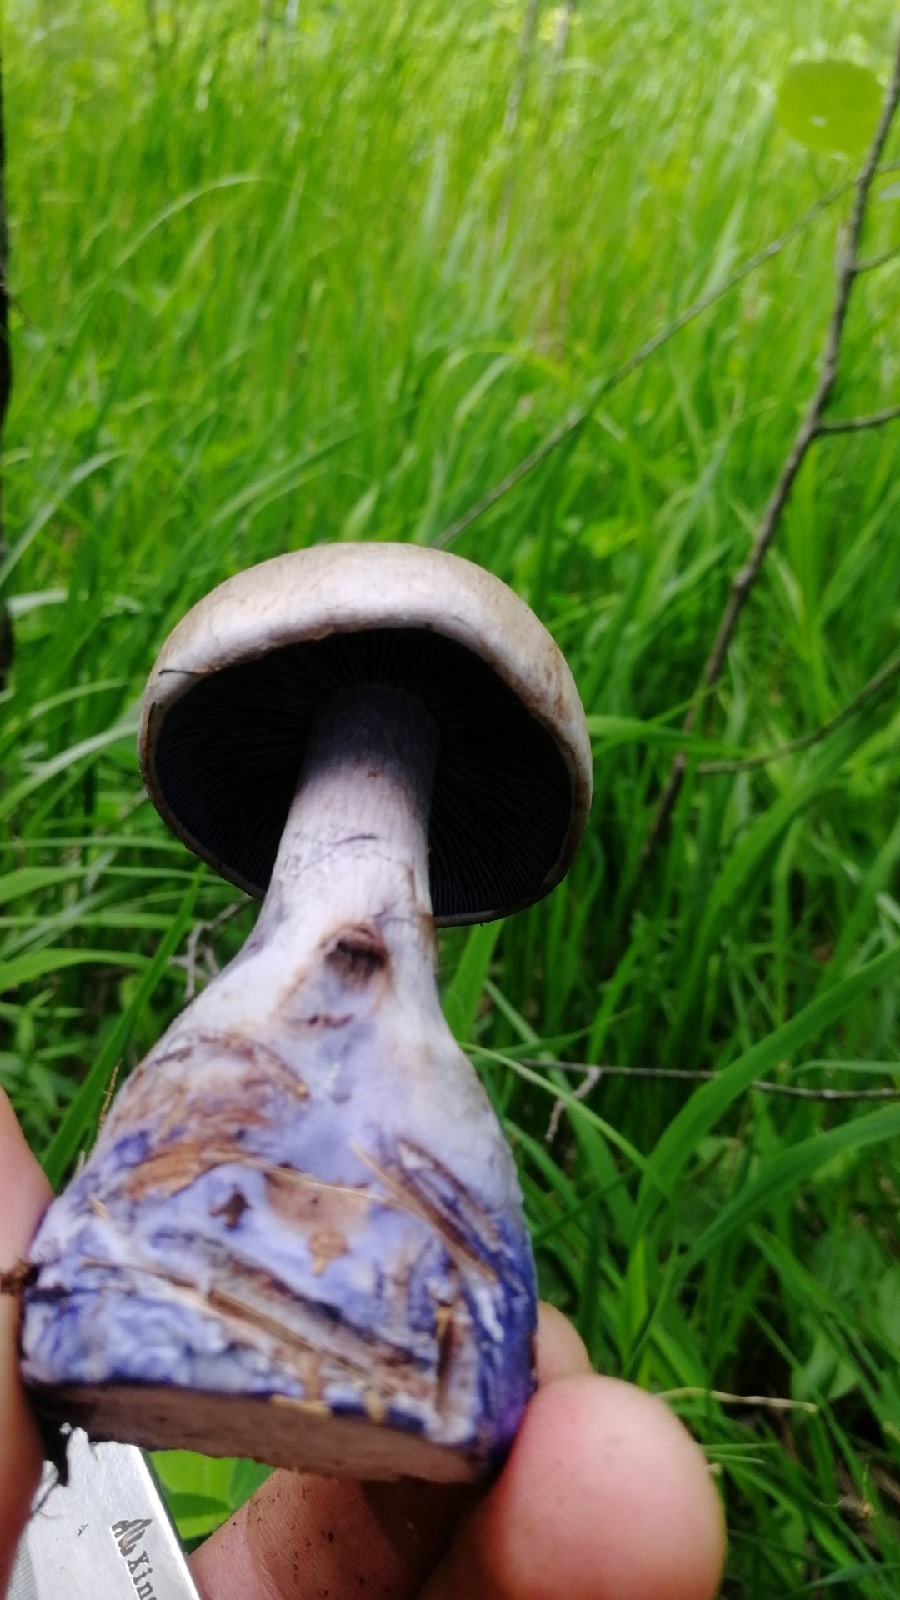 Вблизи оказывается, что у грибов очень необычный цвет